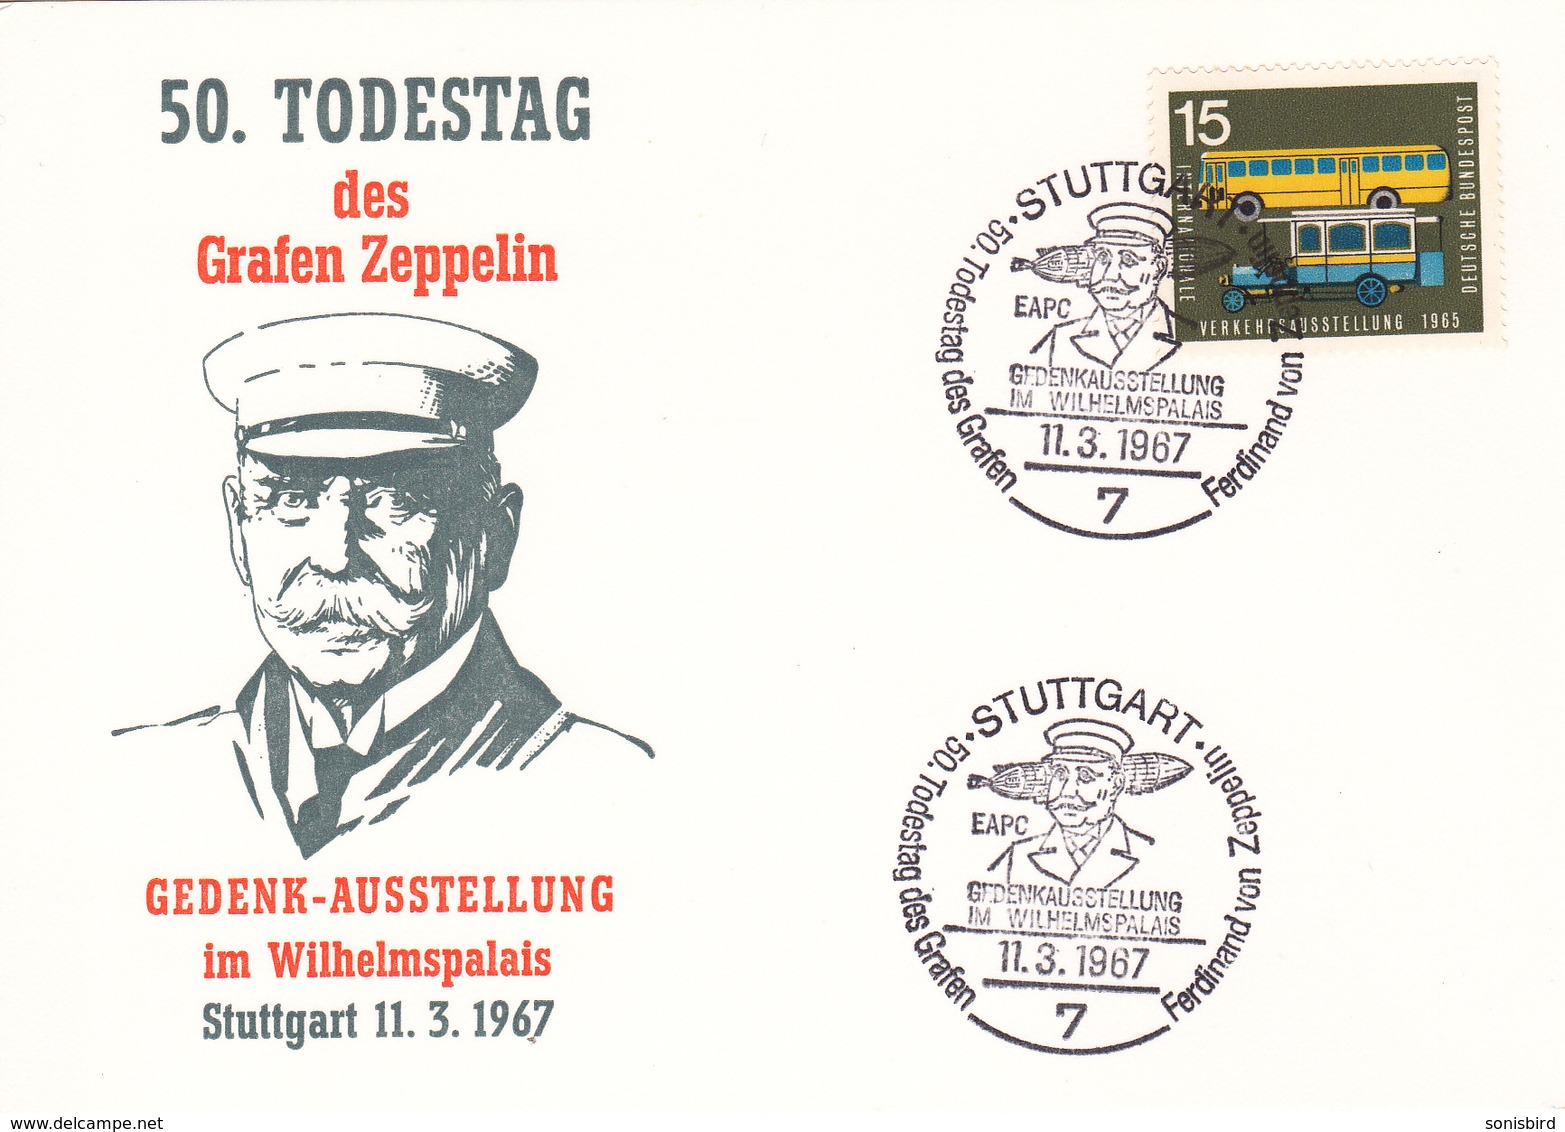 Graf Zeppelin, 50. Todestag, Stuttgart 11.3.1967 - Zeppelins